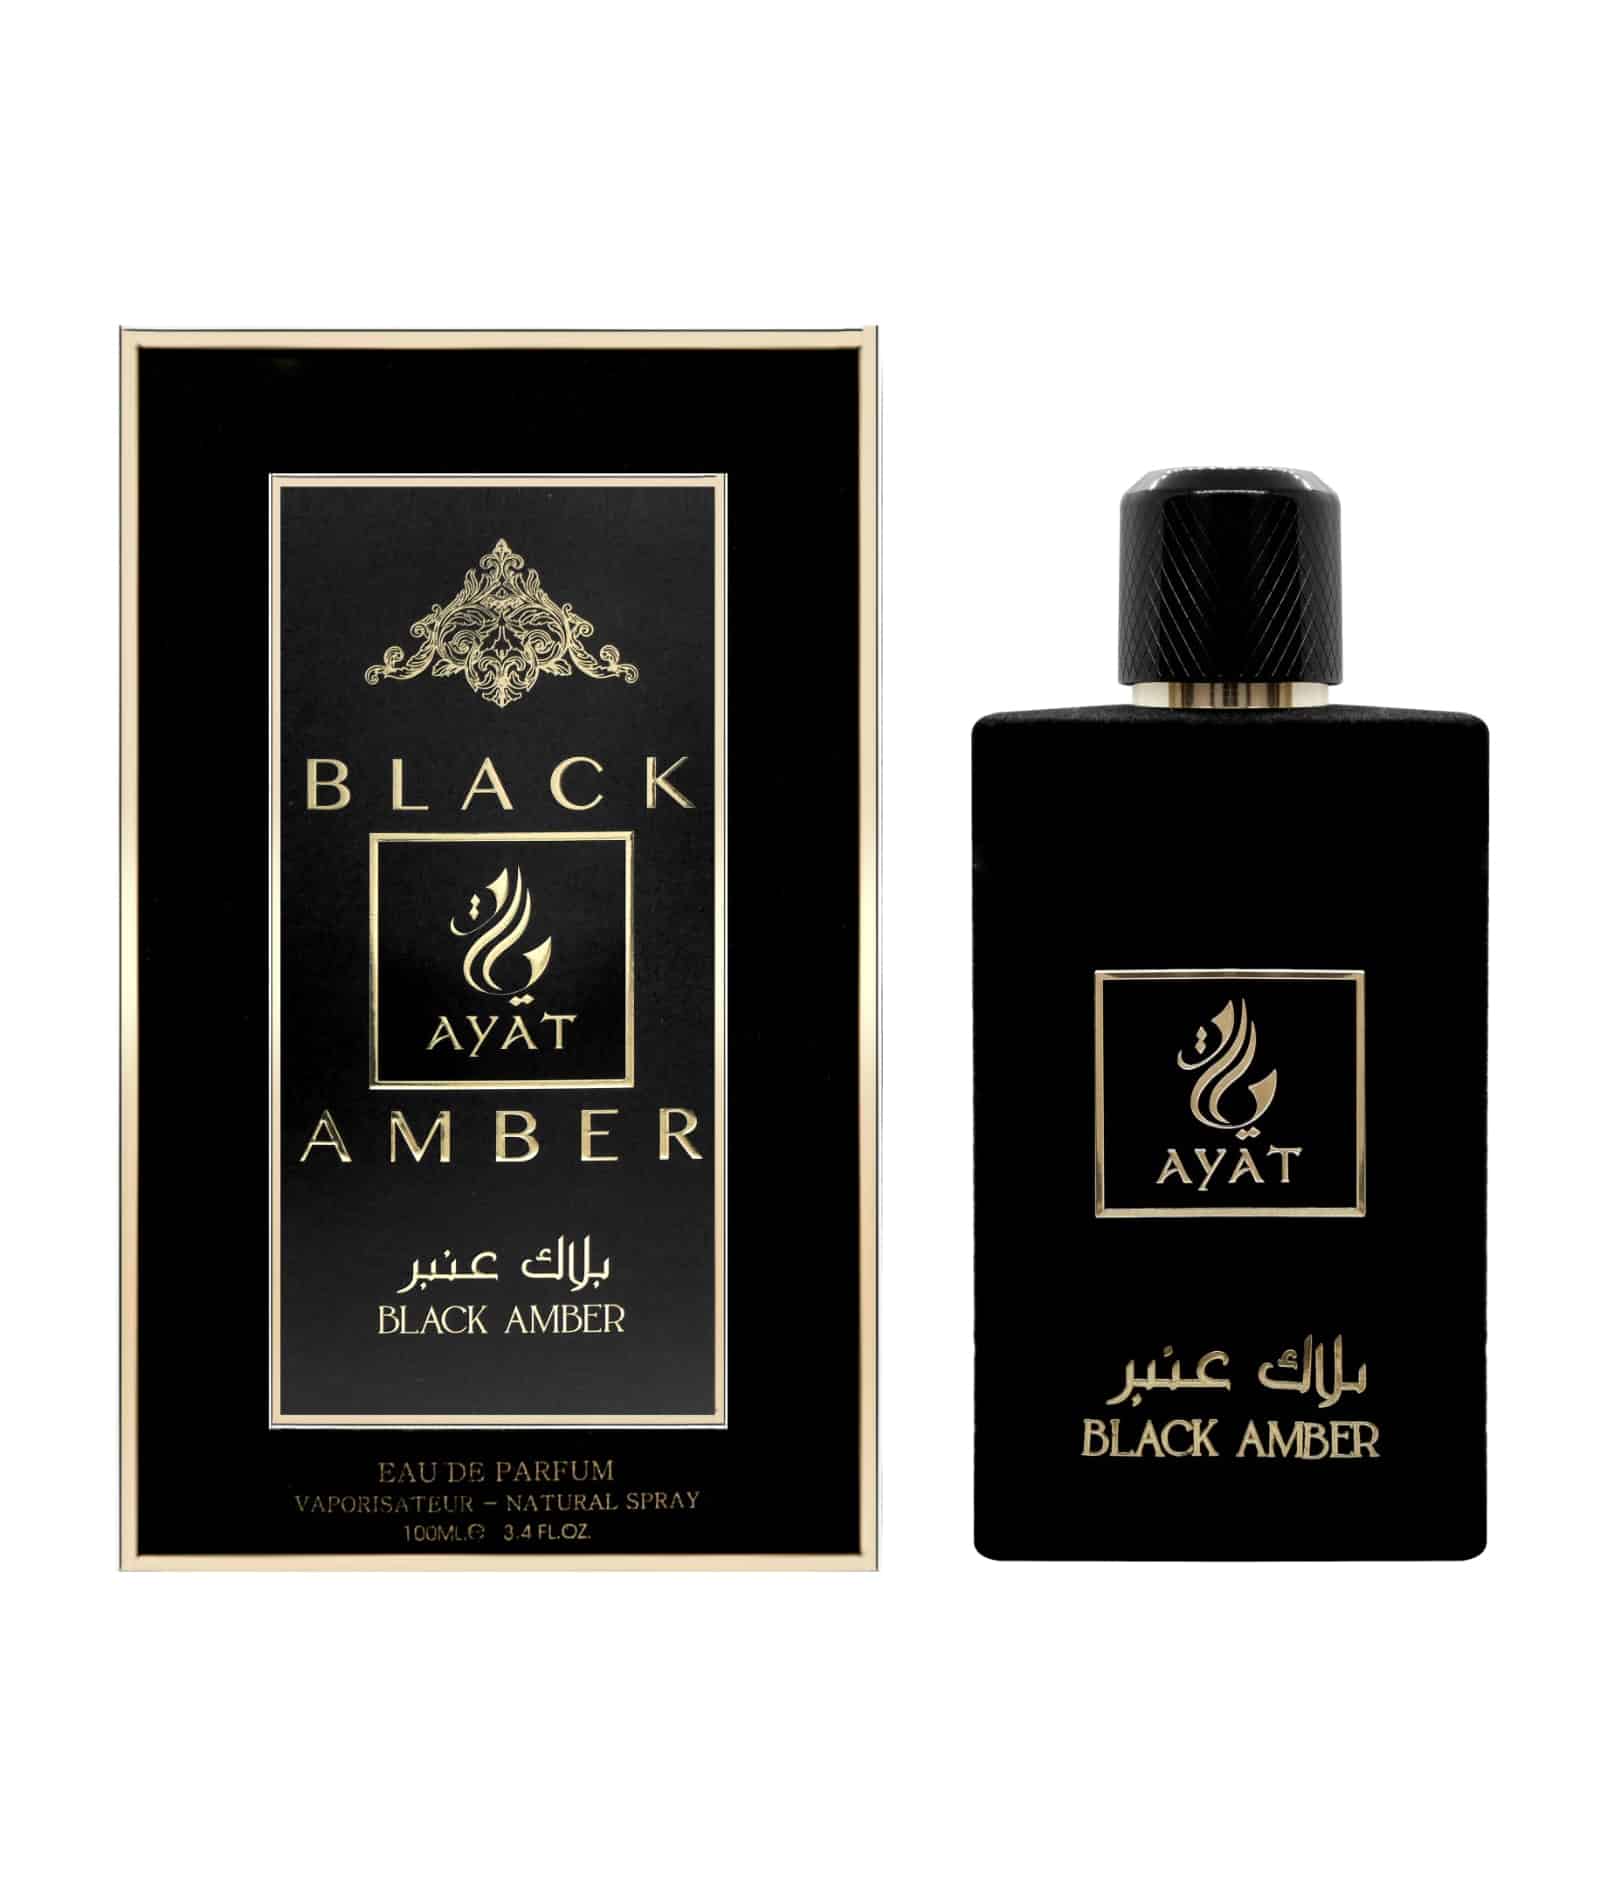 Black amber velvet perfume